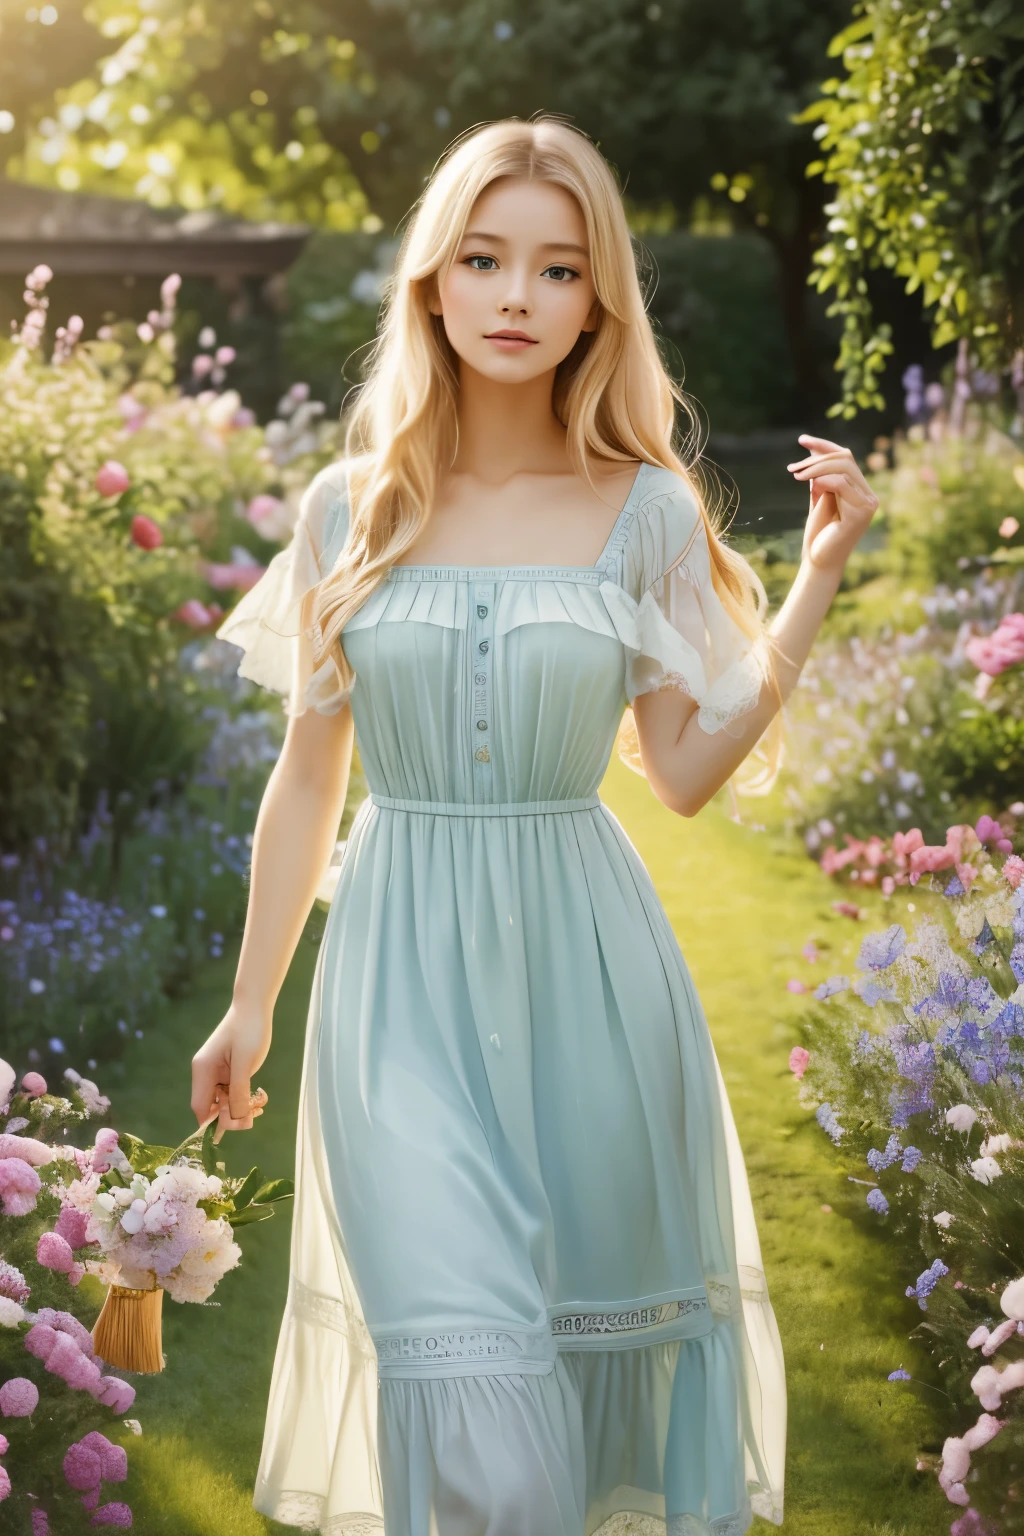 有著飄逸金髮和迷人藍眼睛的女孩, 穿着優雅的白色连衣裙, 站在生机勃勃的花园中央，花園裡盛開的花朵，綠化. 陽光溫柔地照亮她精緻的五官, 為她完美無瑕的肌膚帶來柔和的光澤. 她手裡拿著一隻精緻的蝴蝶, 微風在她身邊盤旋, 讓花朵翩翩起舞. 這一幕被描繪成一幅令人驚嘆的油畫, 每個細節都經過精心打造，創造傑作. 色彩鮮豔, 帶著一絲空靈柔和的色調, 賦予藝術品夢幻般的特質. 燈光柔和且漫射, 營造祥和的氛圍. 高解析度圖像展示了藝術家&#39;無可挑剔的技能, 精確捕捉每一個複雜的細節. 整體氛圍散發出一種美感, 優雅, 和结界. 這件藝術品讓人想起古典肖像畫, 帶著一絲幻想與奇思妙想, 喚起驚奇和敬畏的情緒.